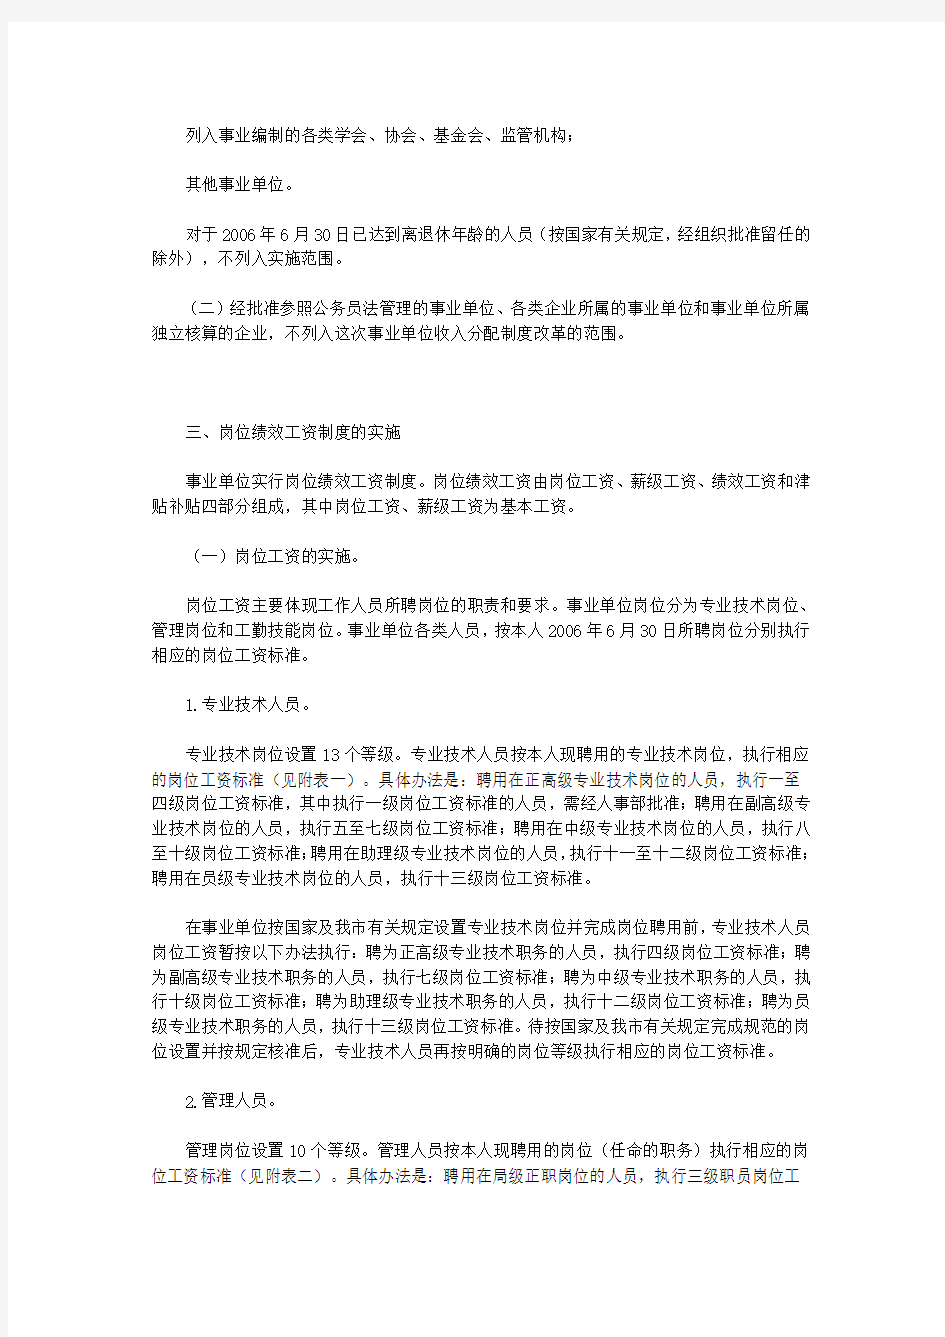 天津市事业单位工作人员收入分配制度改革实施意见